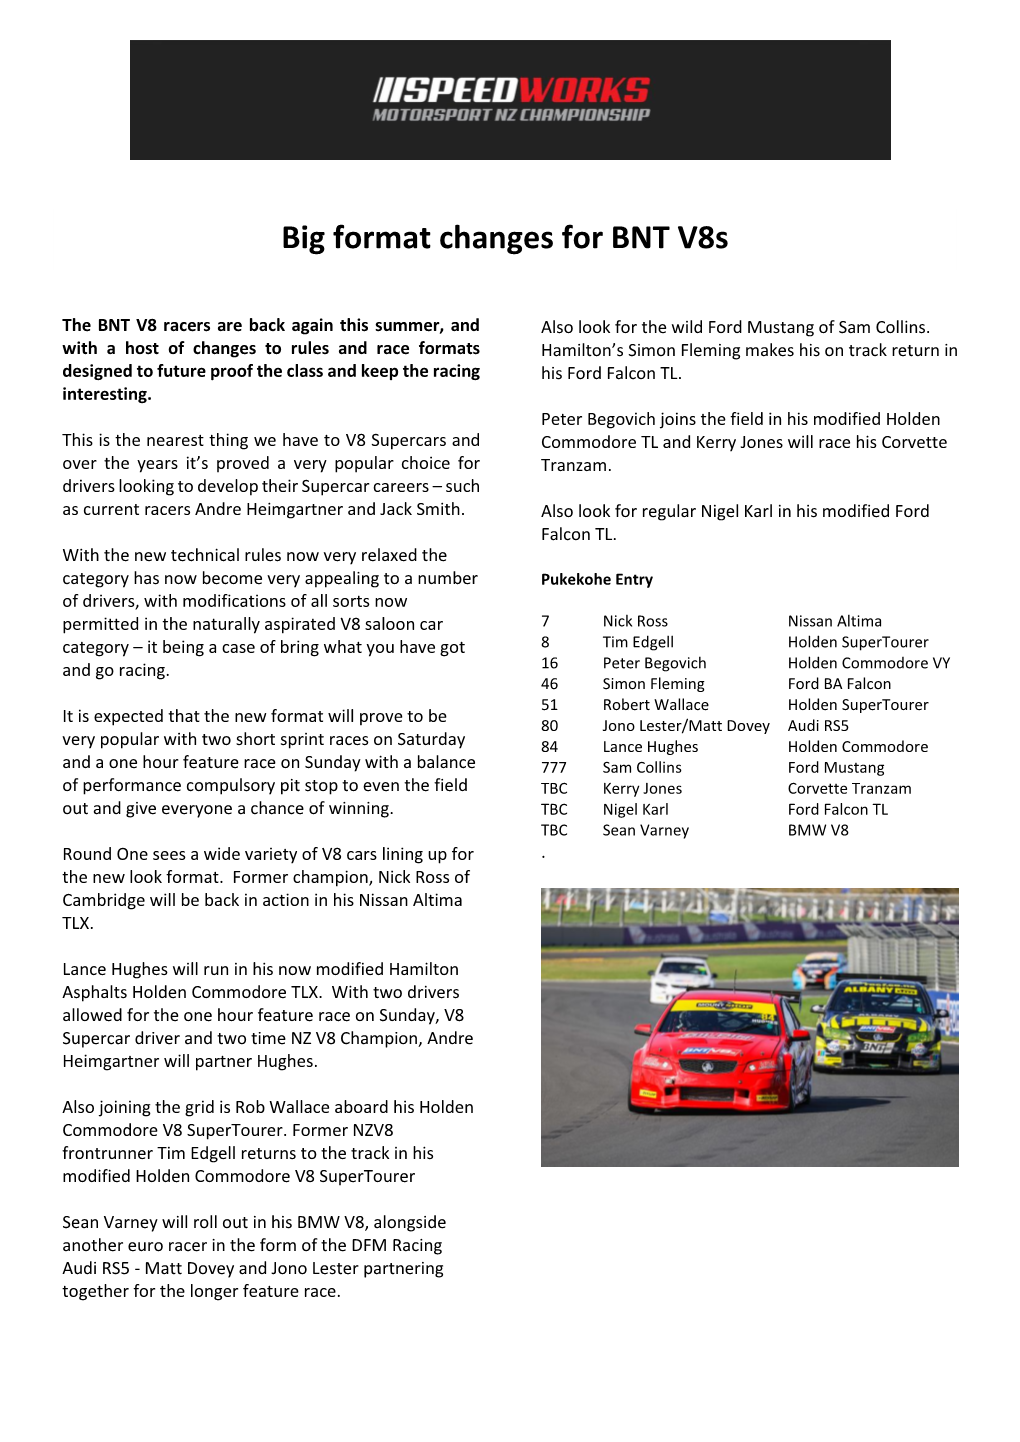 Big Format Changes for BNT V8s